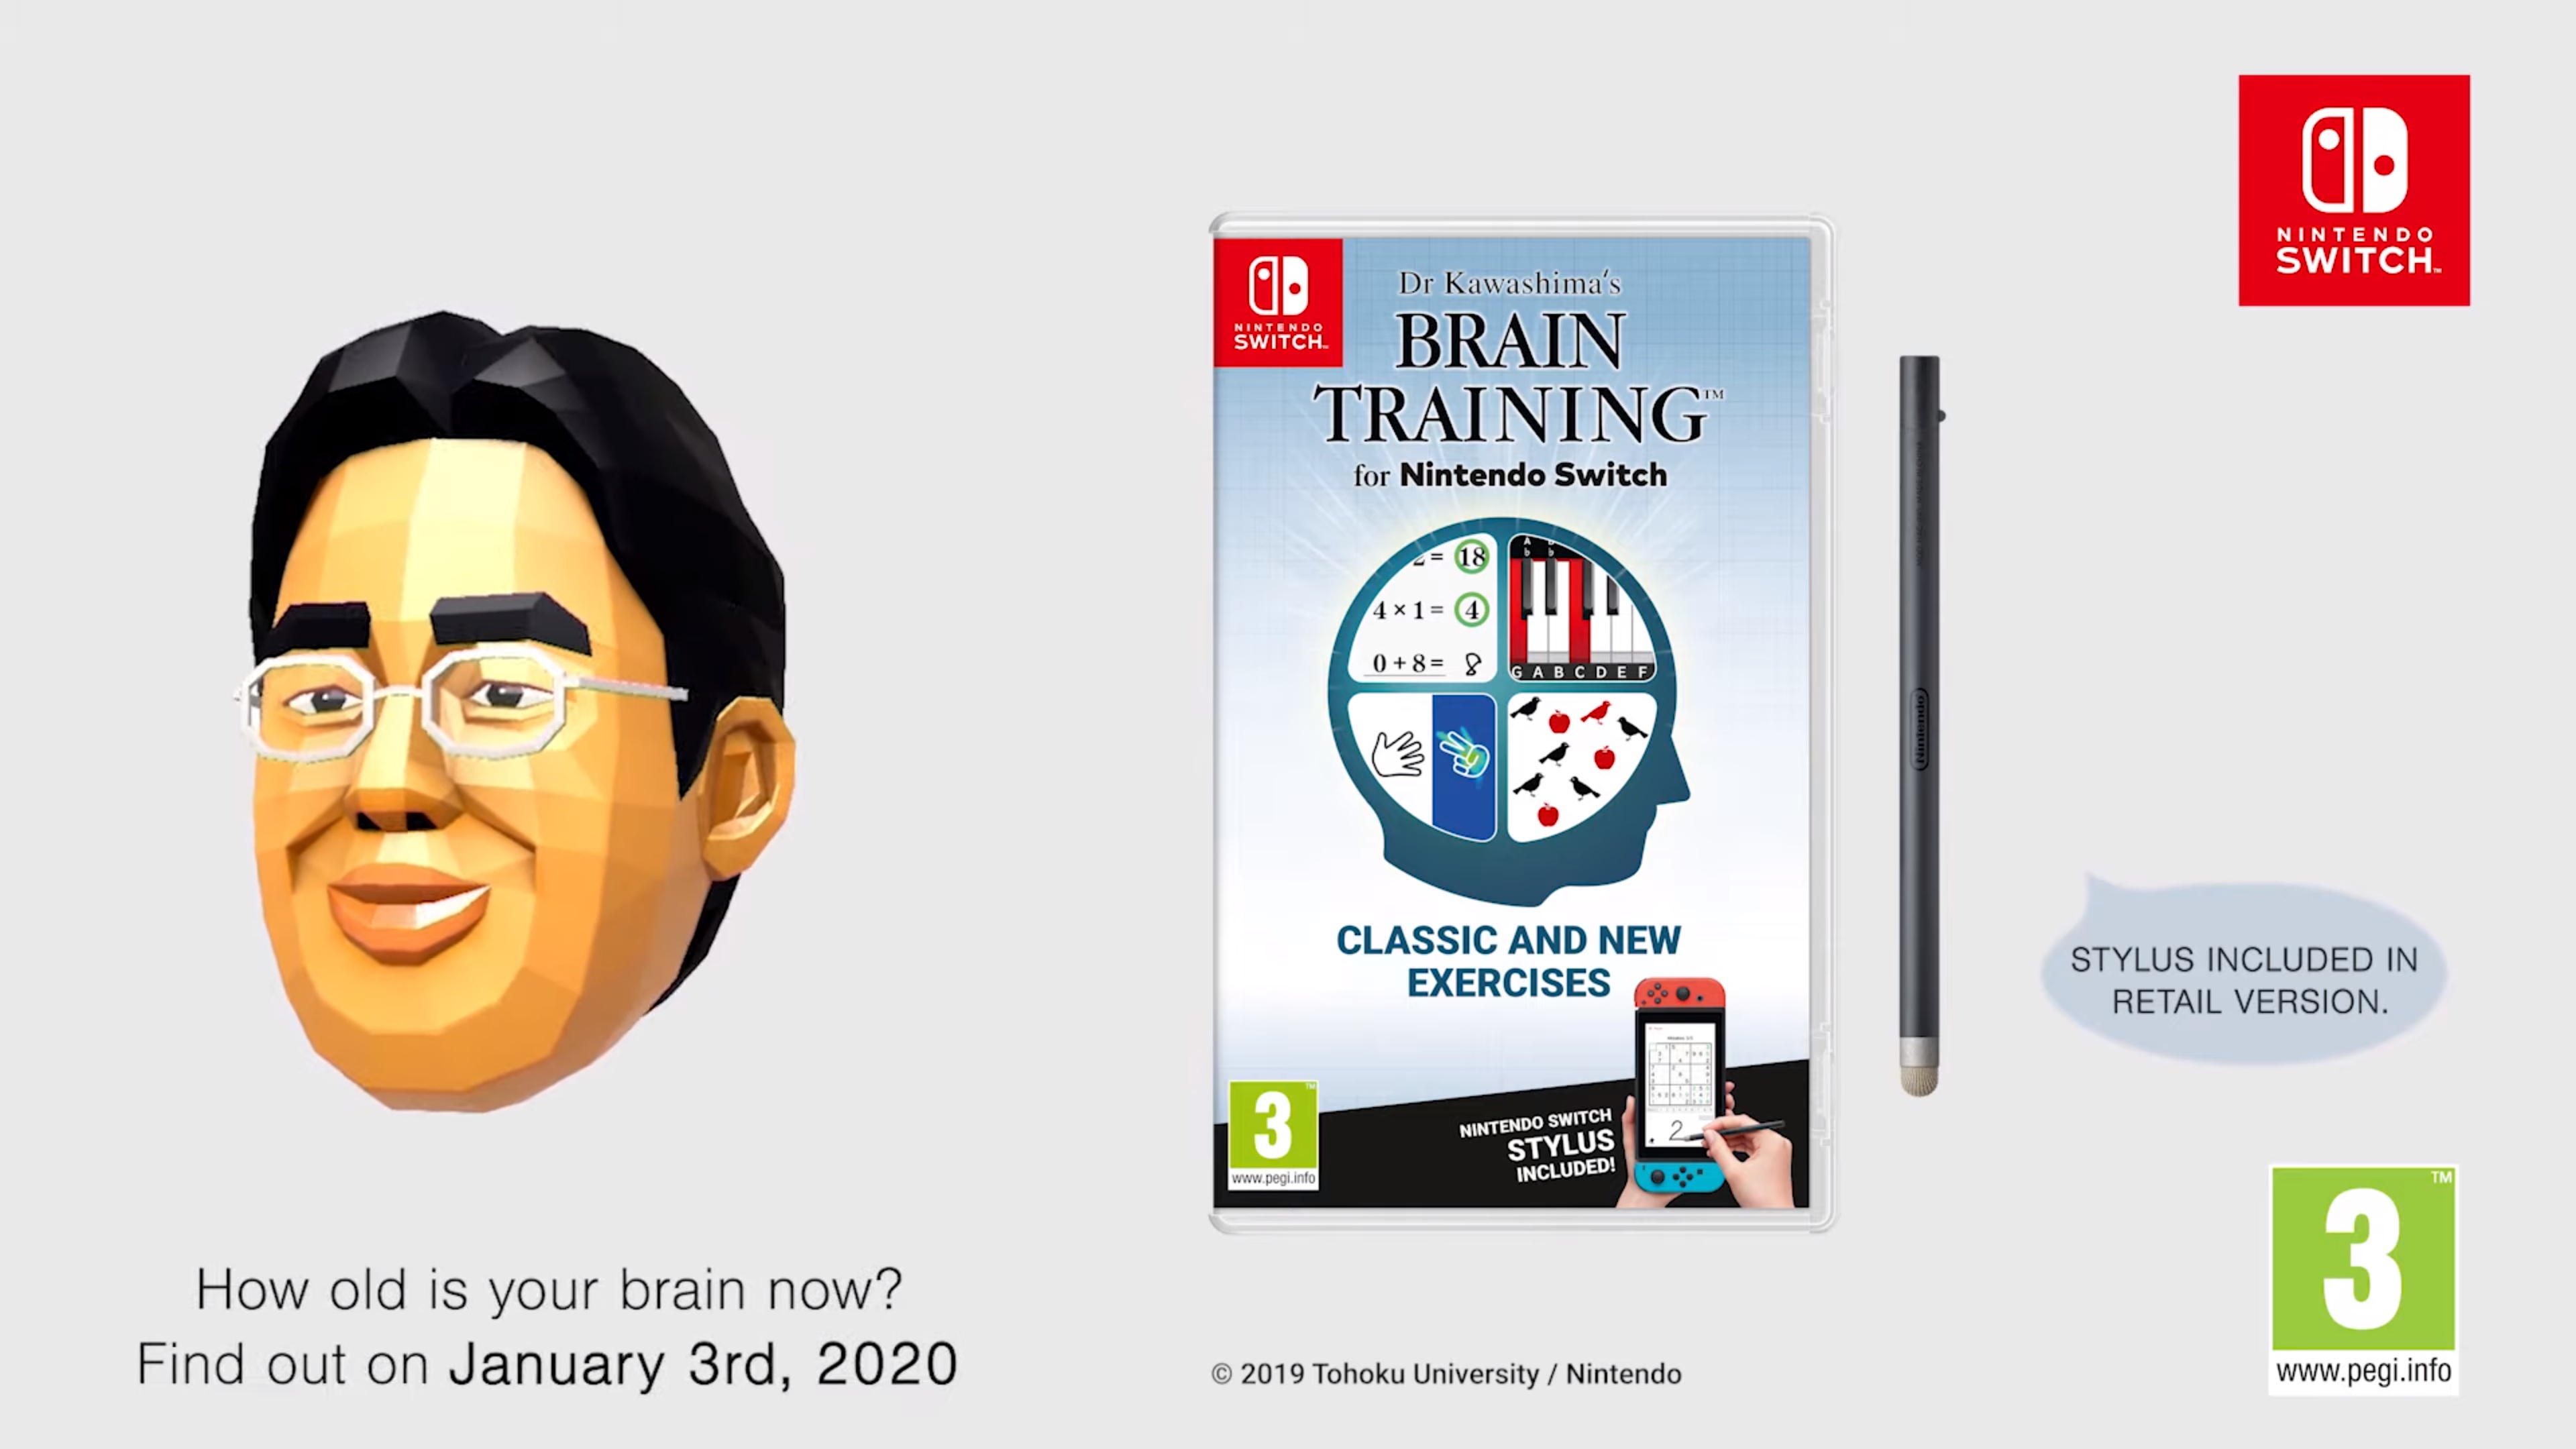 dr kawashima's brain training